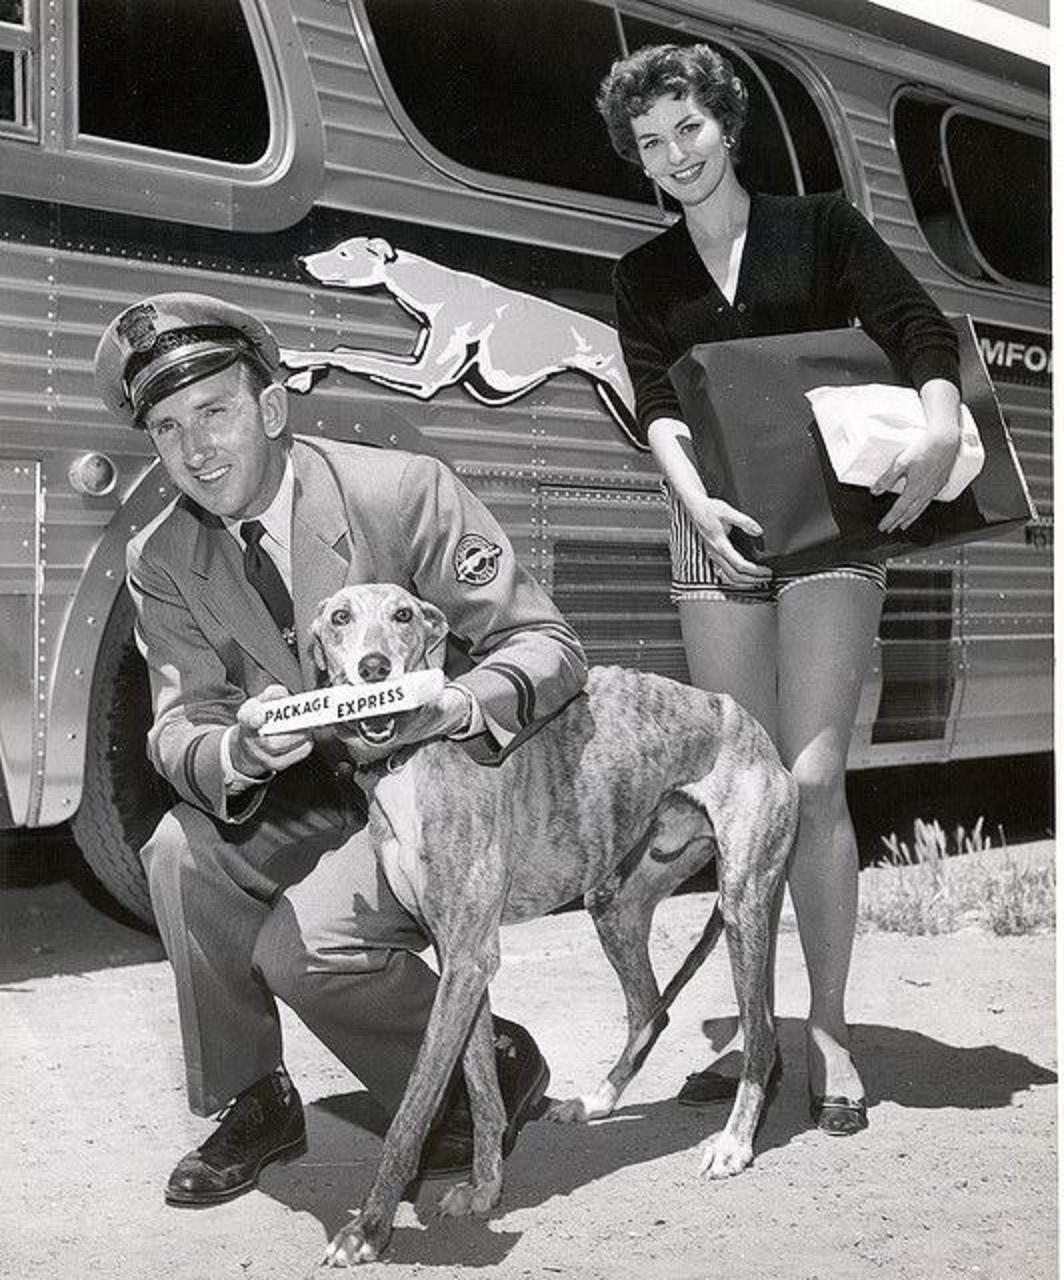 Steverino, aka Lady Greyhound. Early company mascot